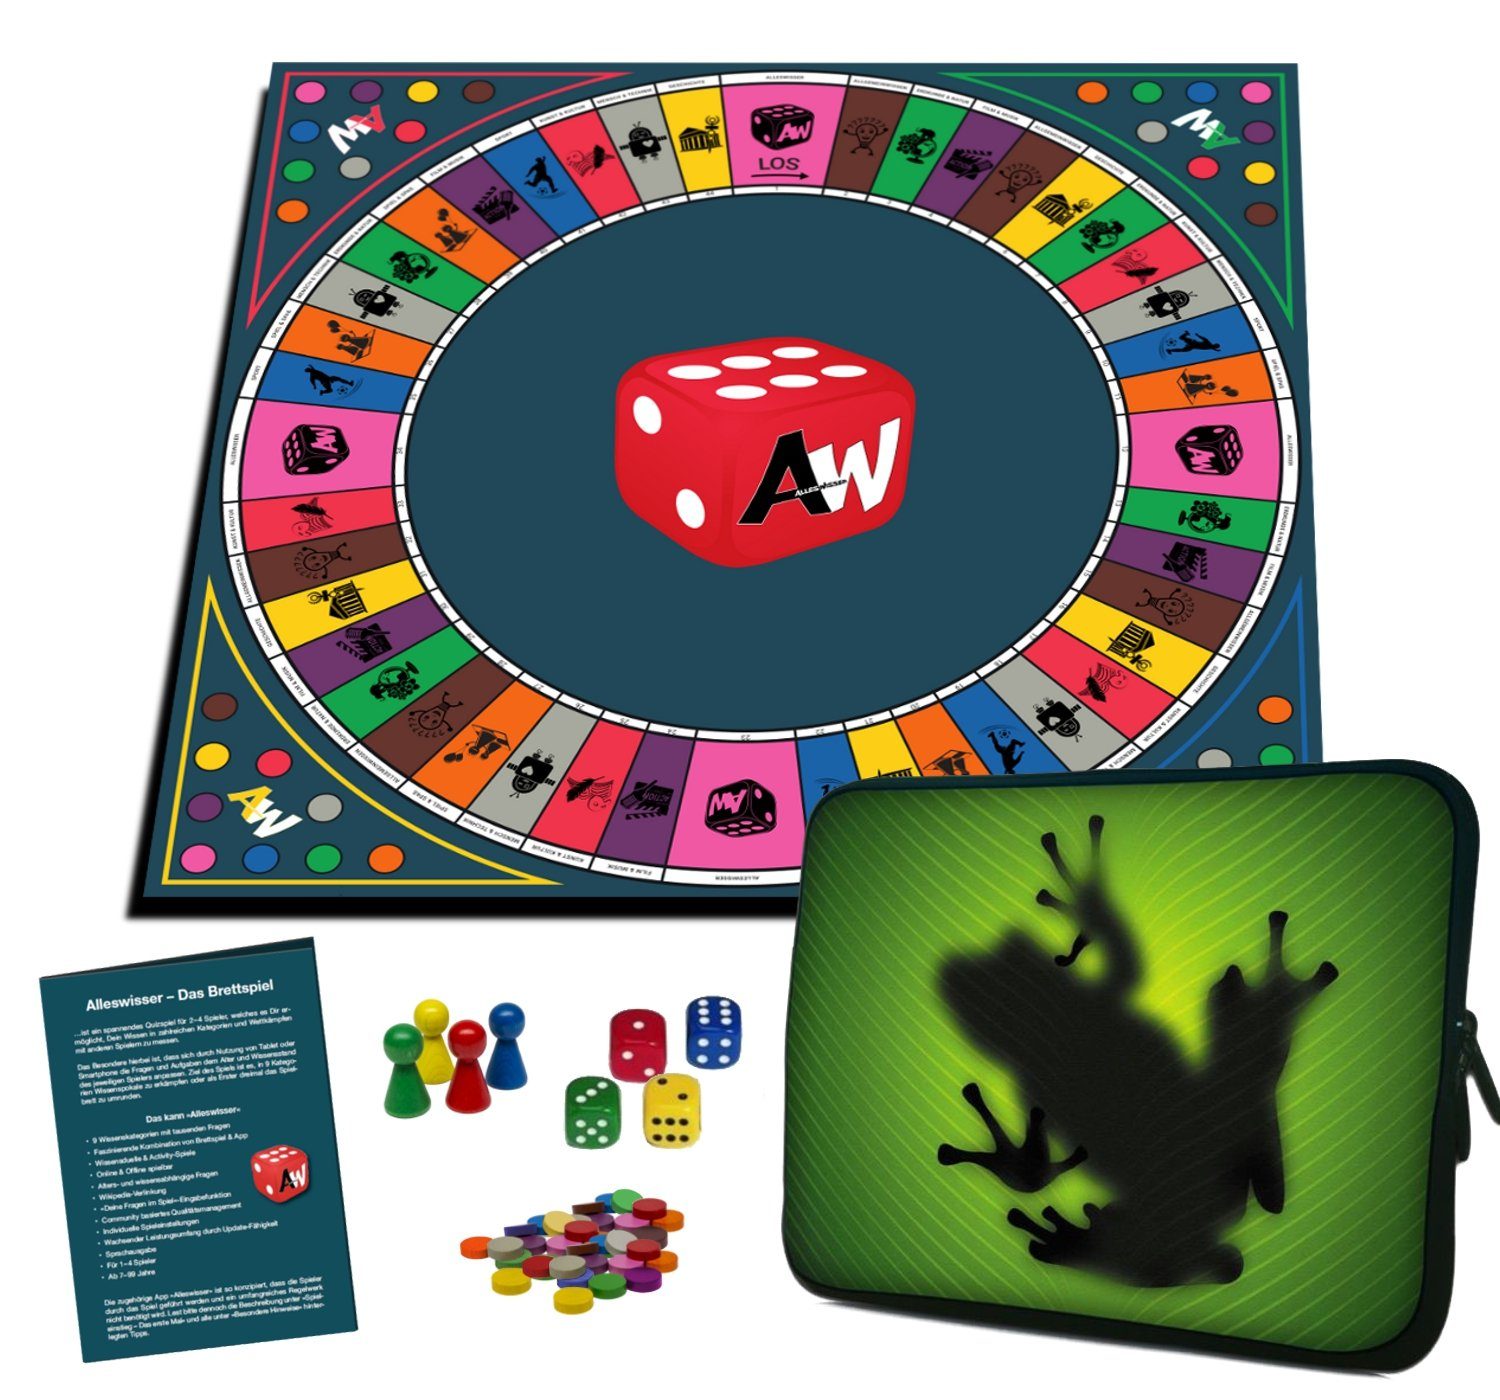 ALLESWISSER Spiel, Alleswisser - Das Brettspiel Interaktives Quiz-, Wissens-, Familienspiel mit App für iOS & Android Frosch Natur